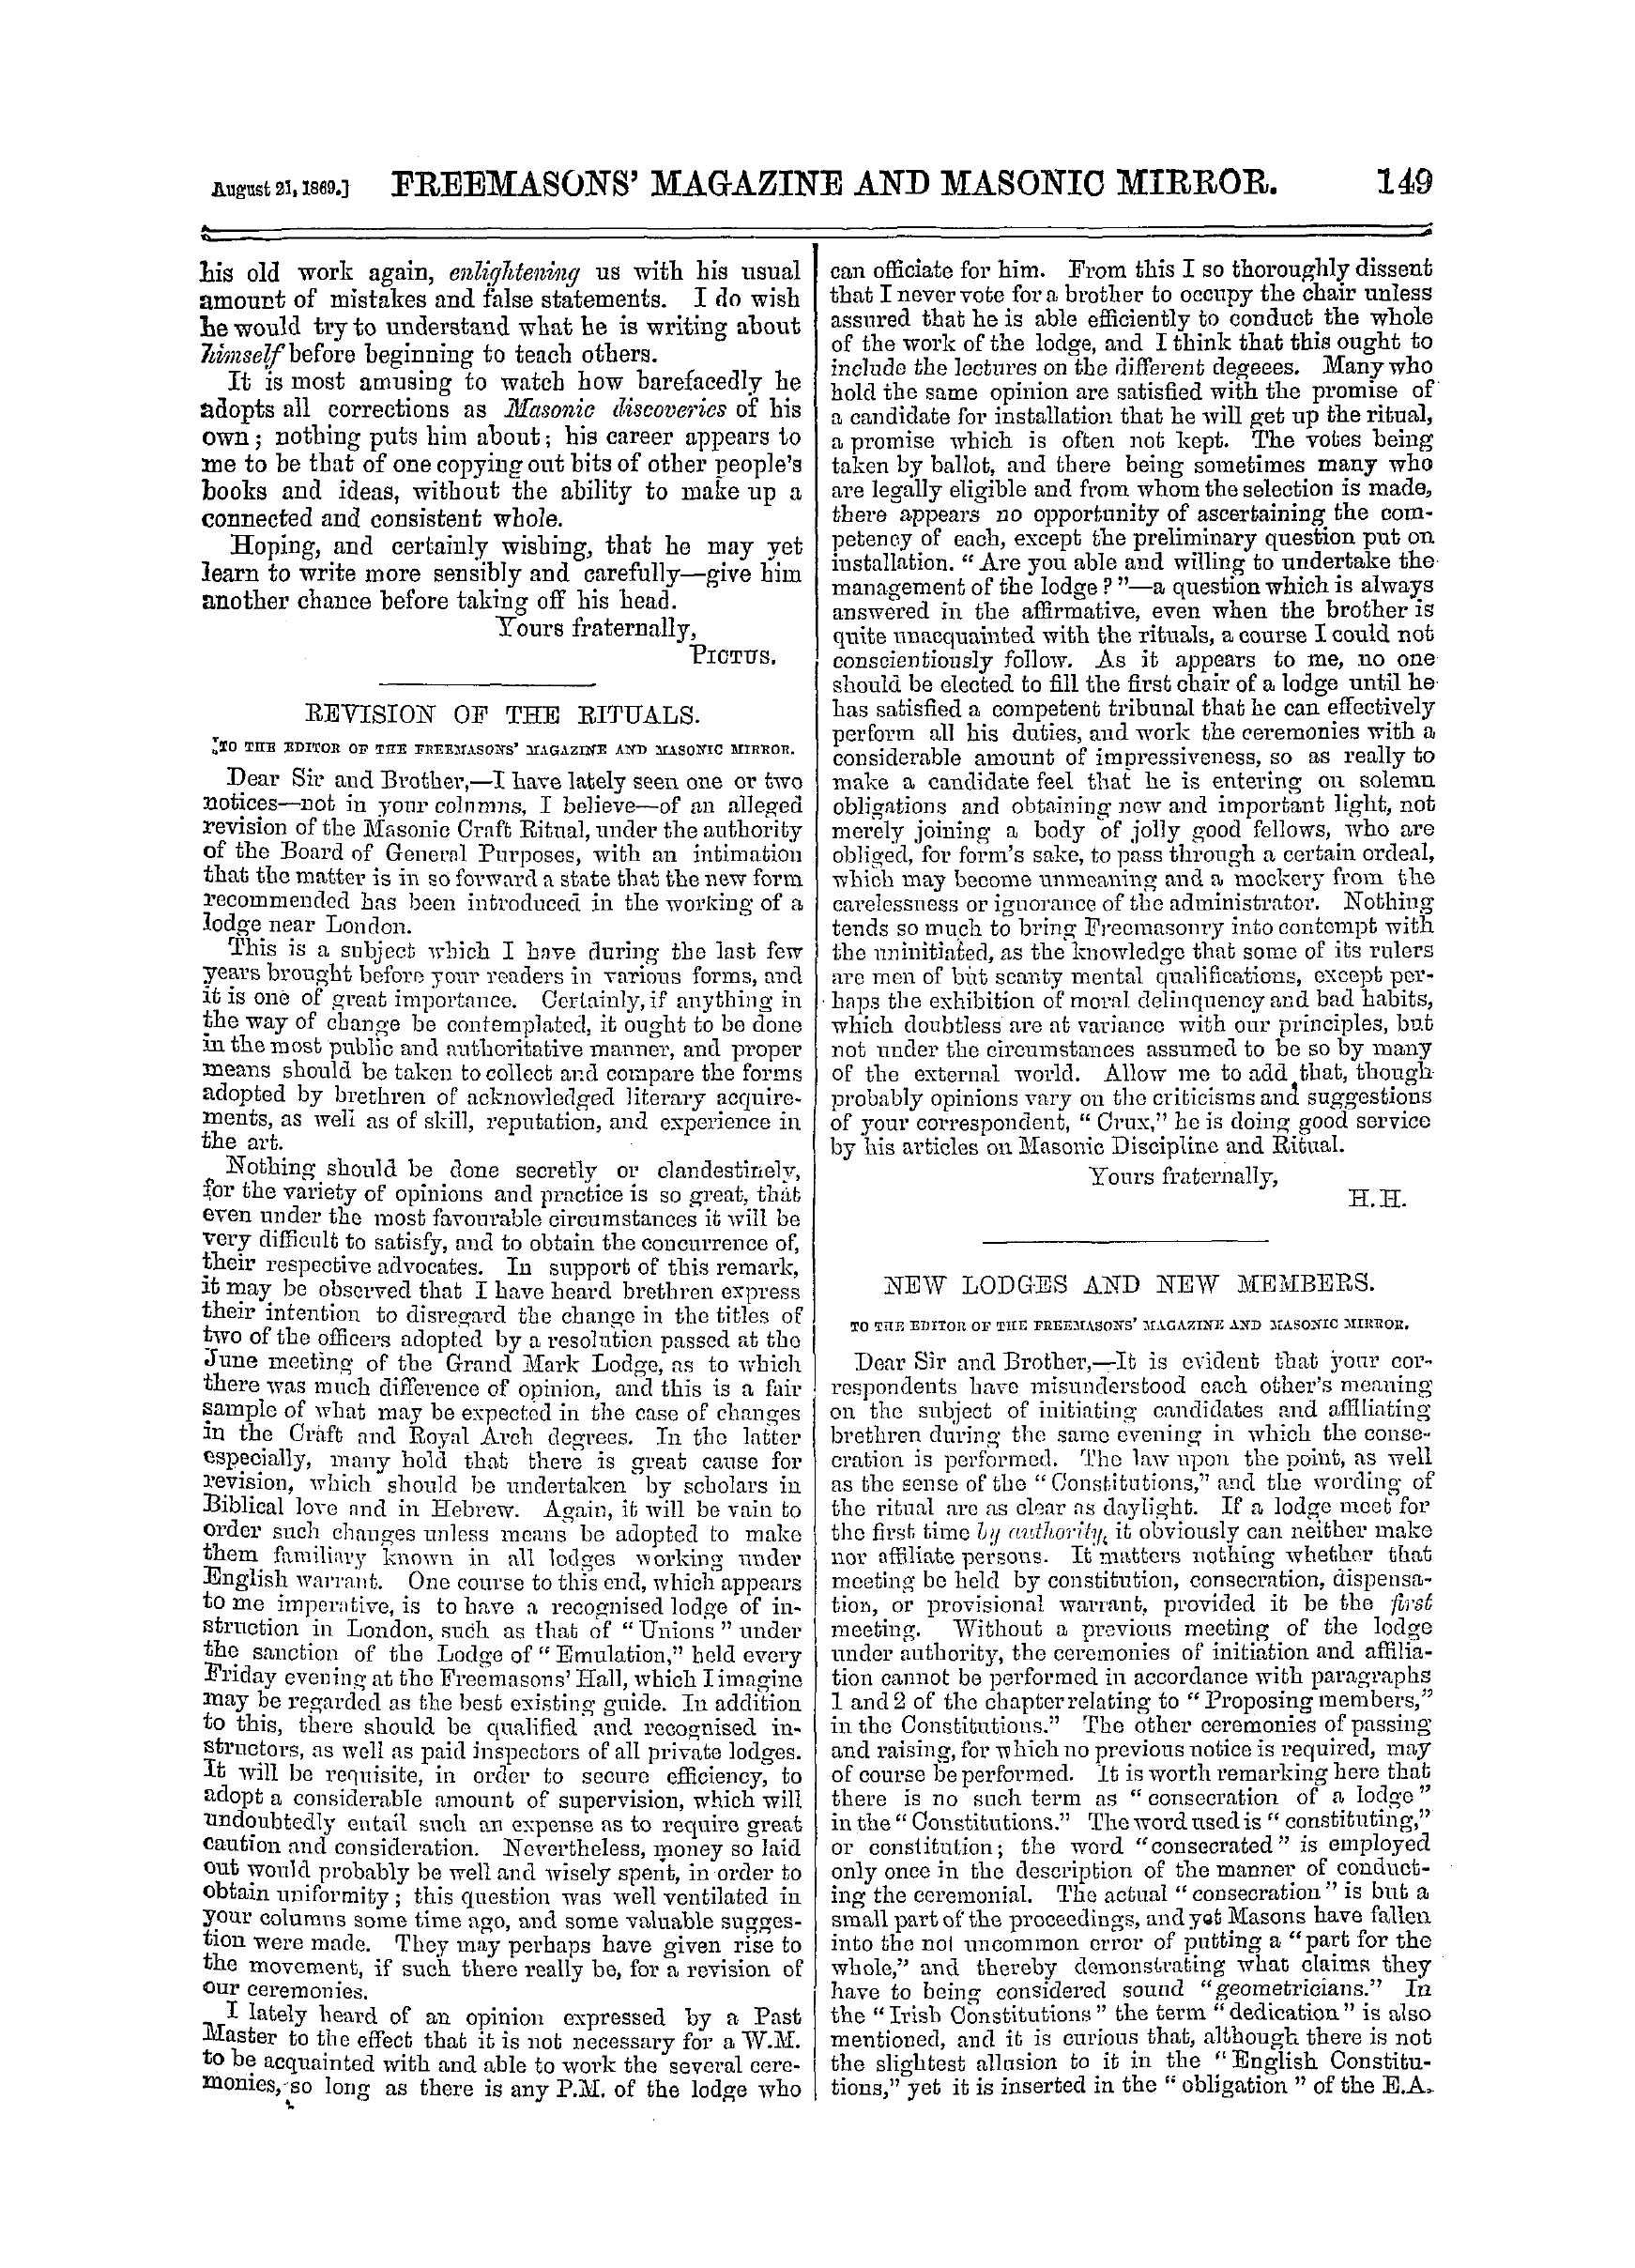 The Freemasons' Monthly Magazine: 1869-08-21: 9